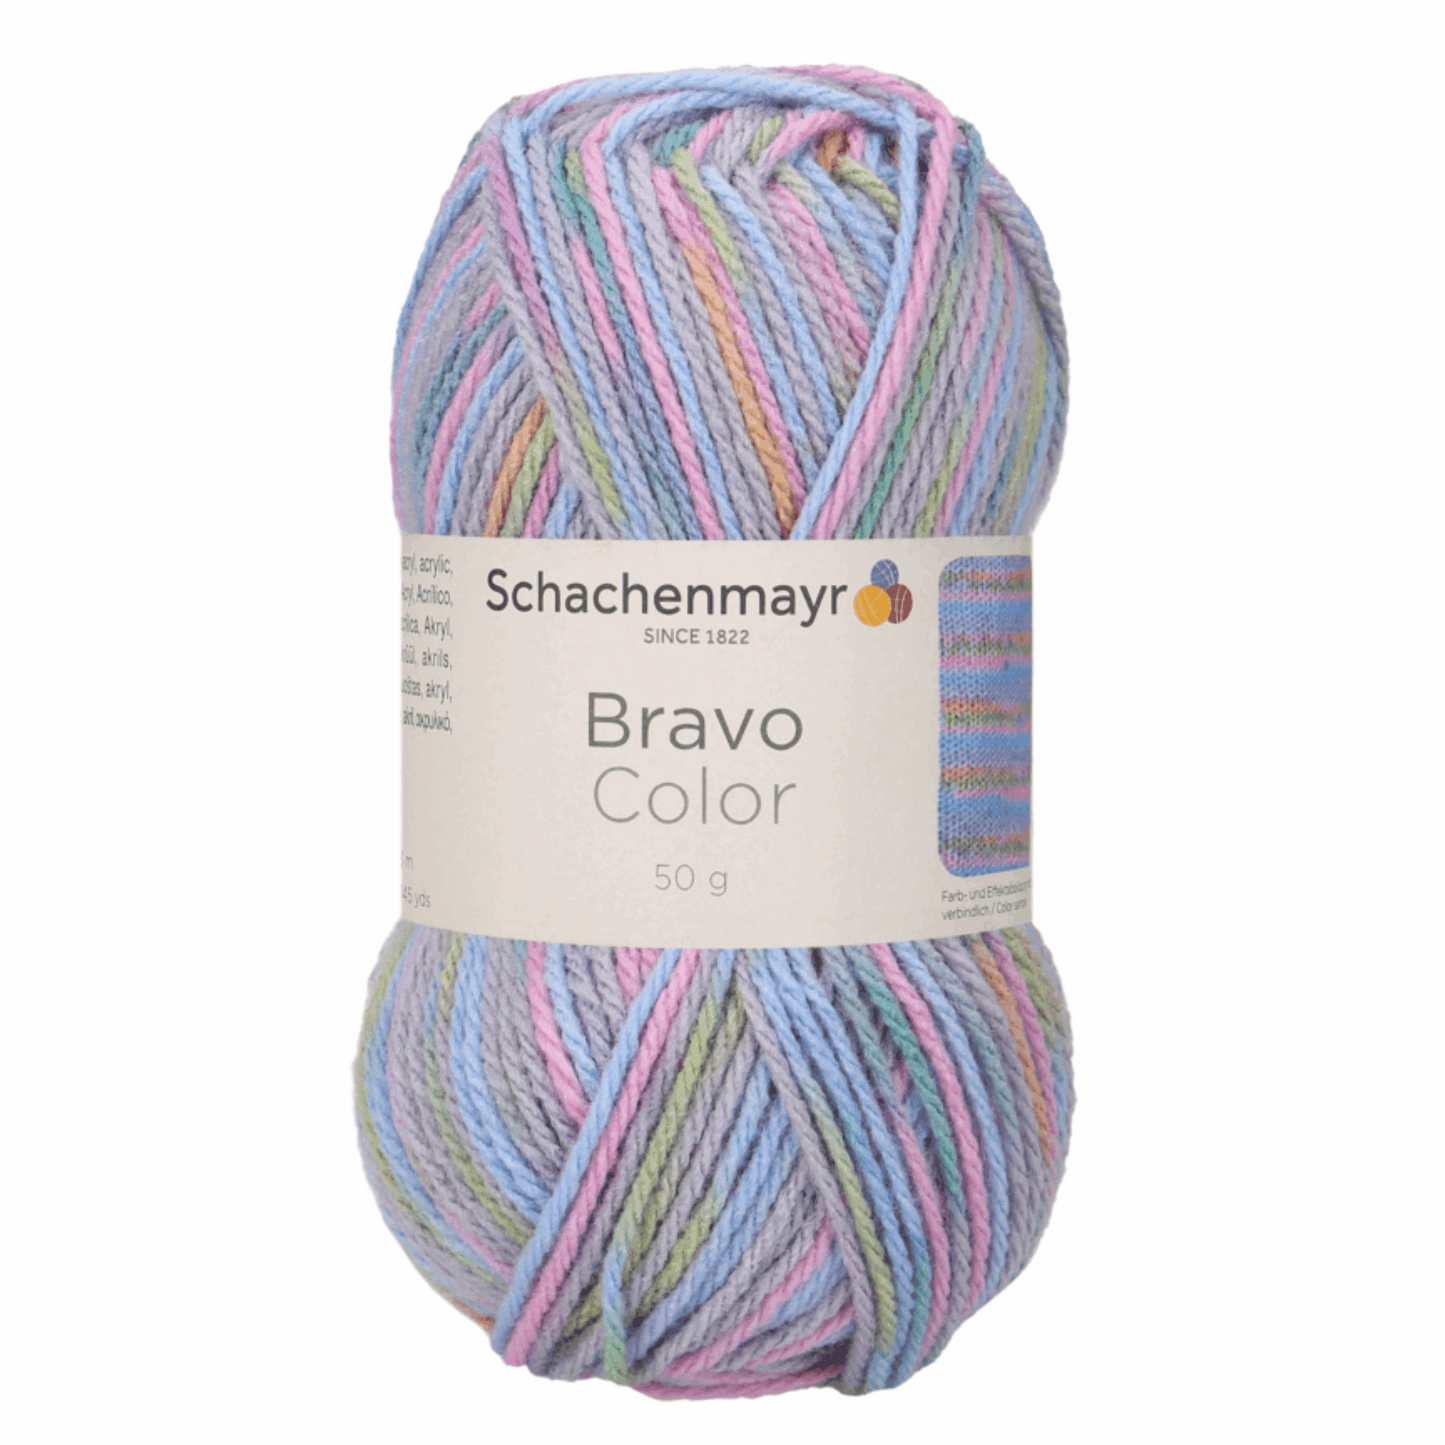 Schachenmayr Bravo50g, 90421, Farbe Pastell2116